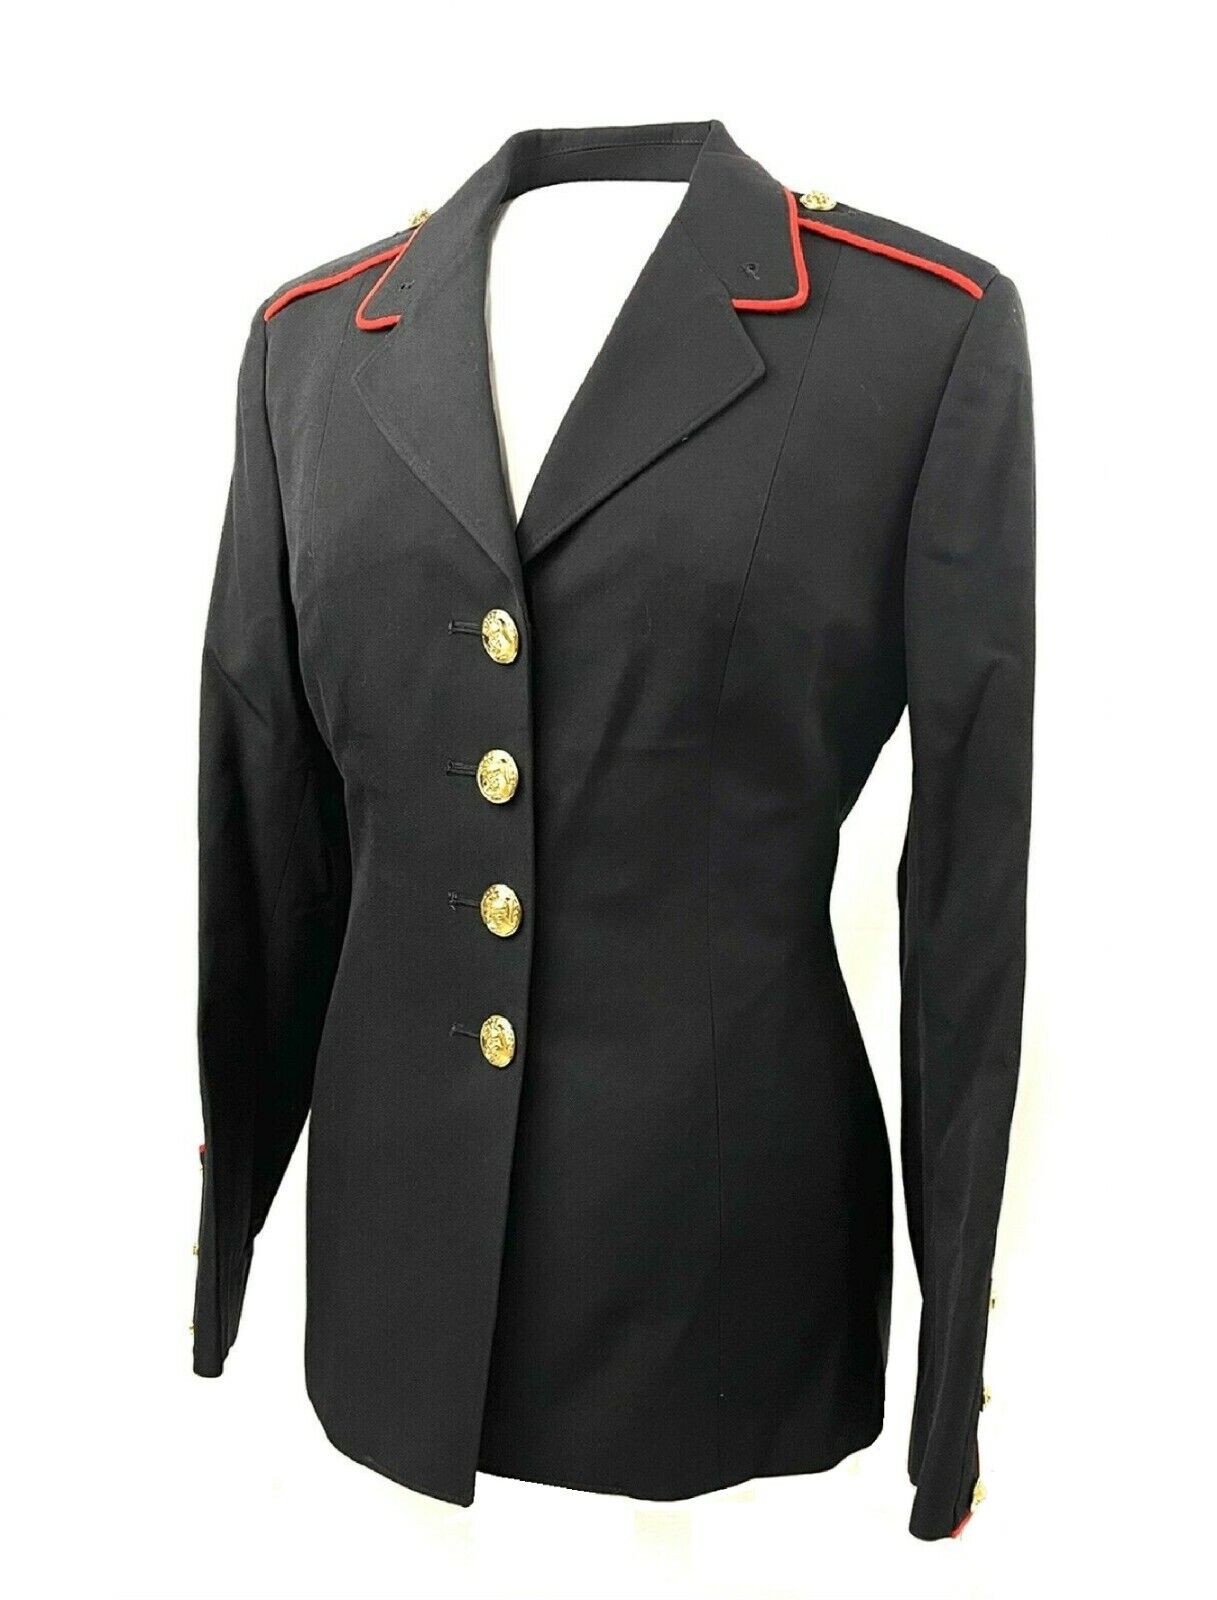 NOS OLD STYLE WOMEN'S 8R USMC US MILITARY DRESS BLUE TUNIC UNIFORM COAT JACKET